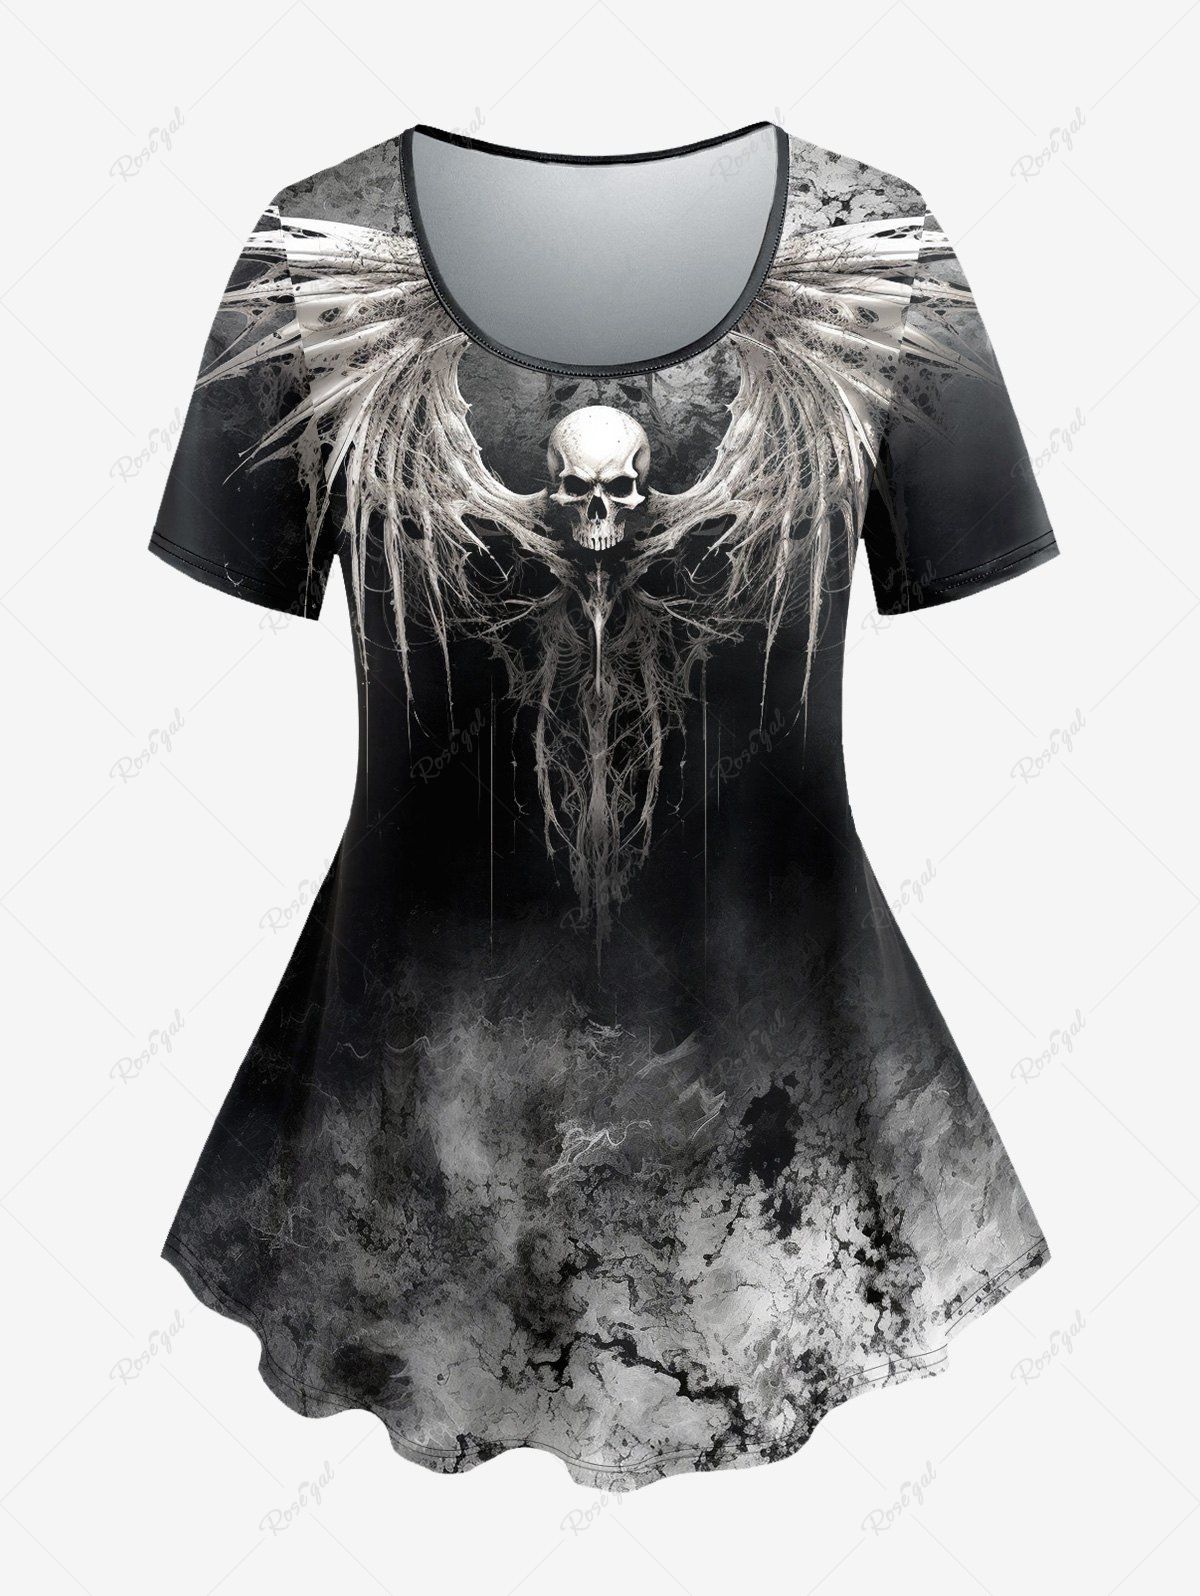 T-shirt D'Halloween Teinté Crâne Ombrée Style Gothique Noir 5X